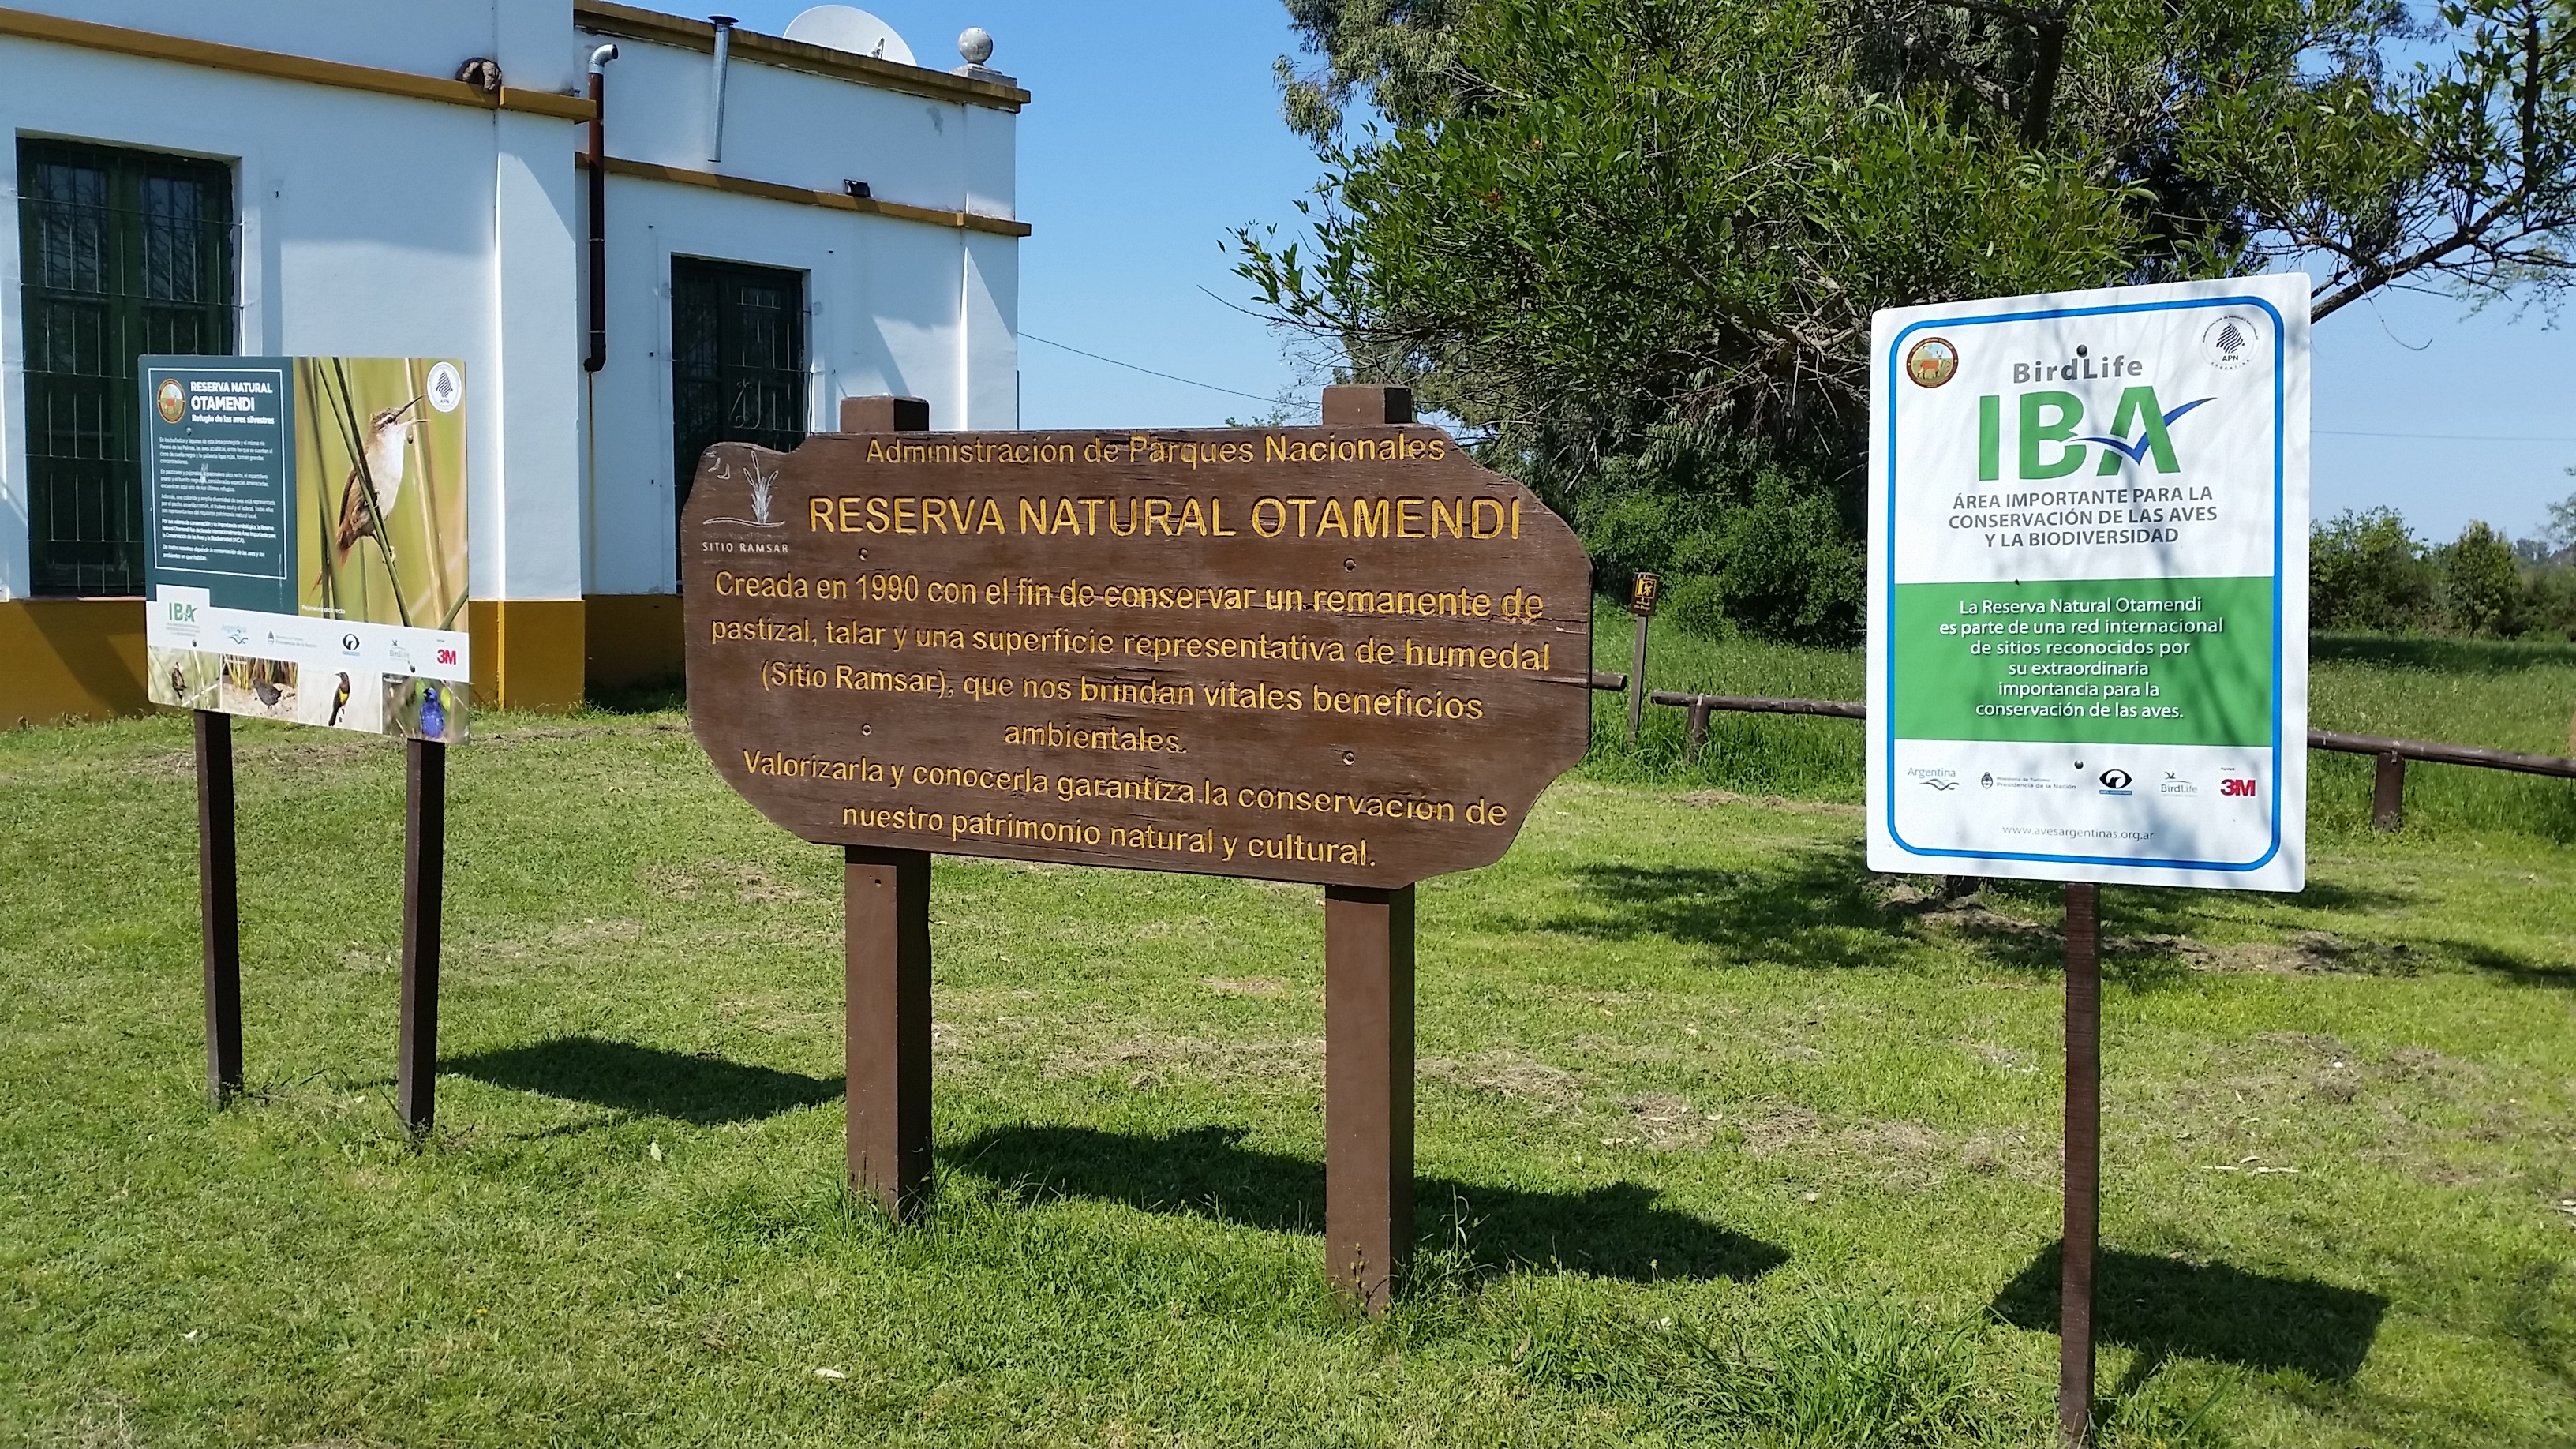 La Reserva Natural Otamendi se convirtió en el Parque Nacional Ciervo de los Pantanos. Foto: Damián Profeta. Licencia: CC BY-NC 2.0.